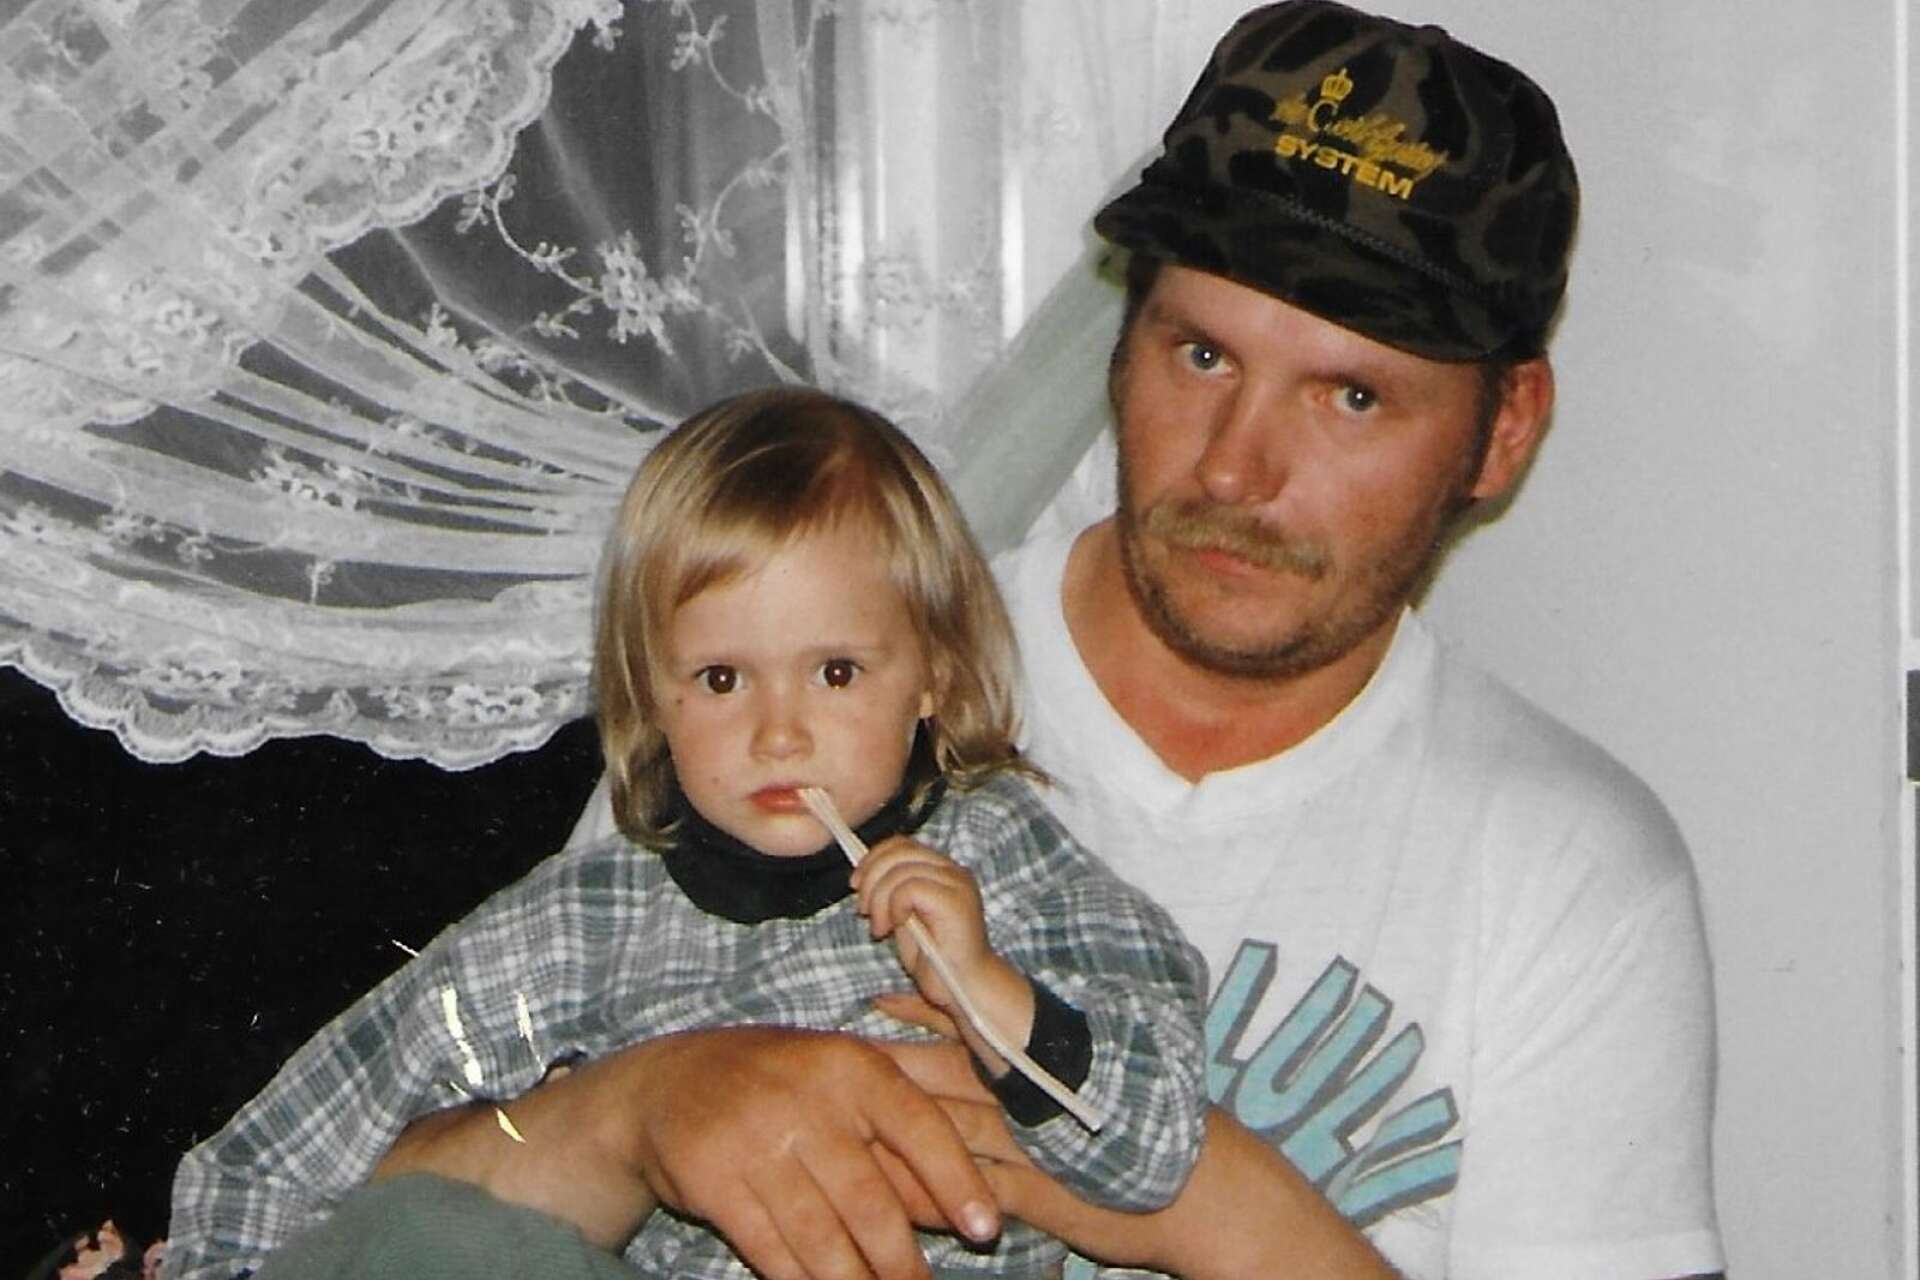 Kari Ylioja, 58, med sin brorsdotter. Kari hittades ihjälslagen i ett öde hus i Lesjöfors i november förra året.